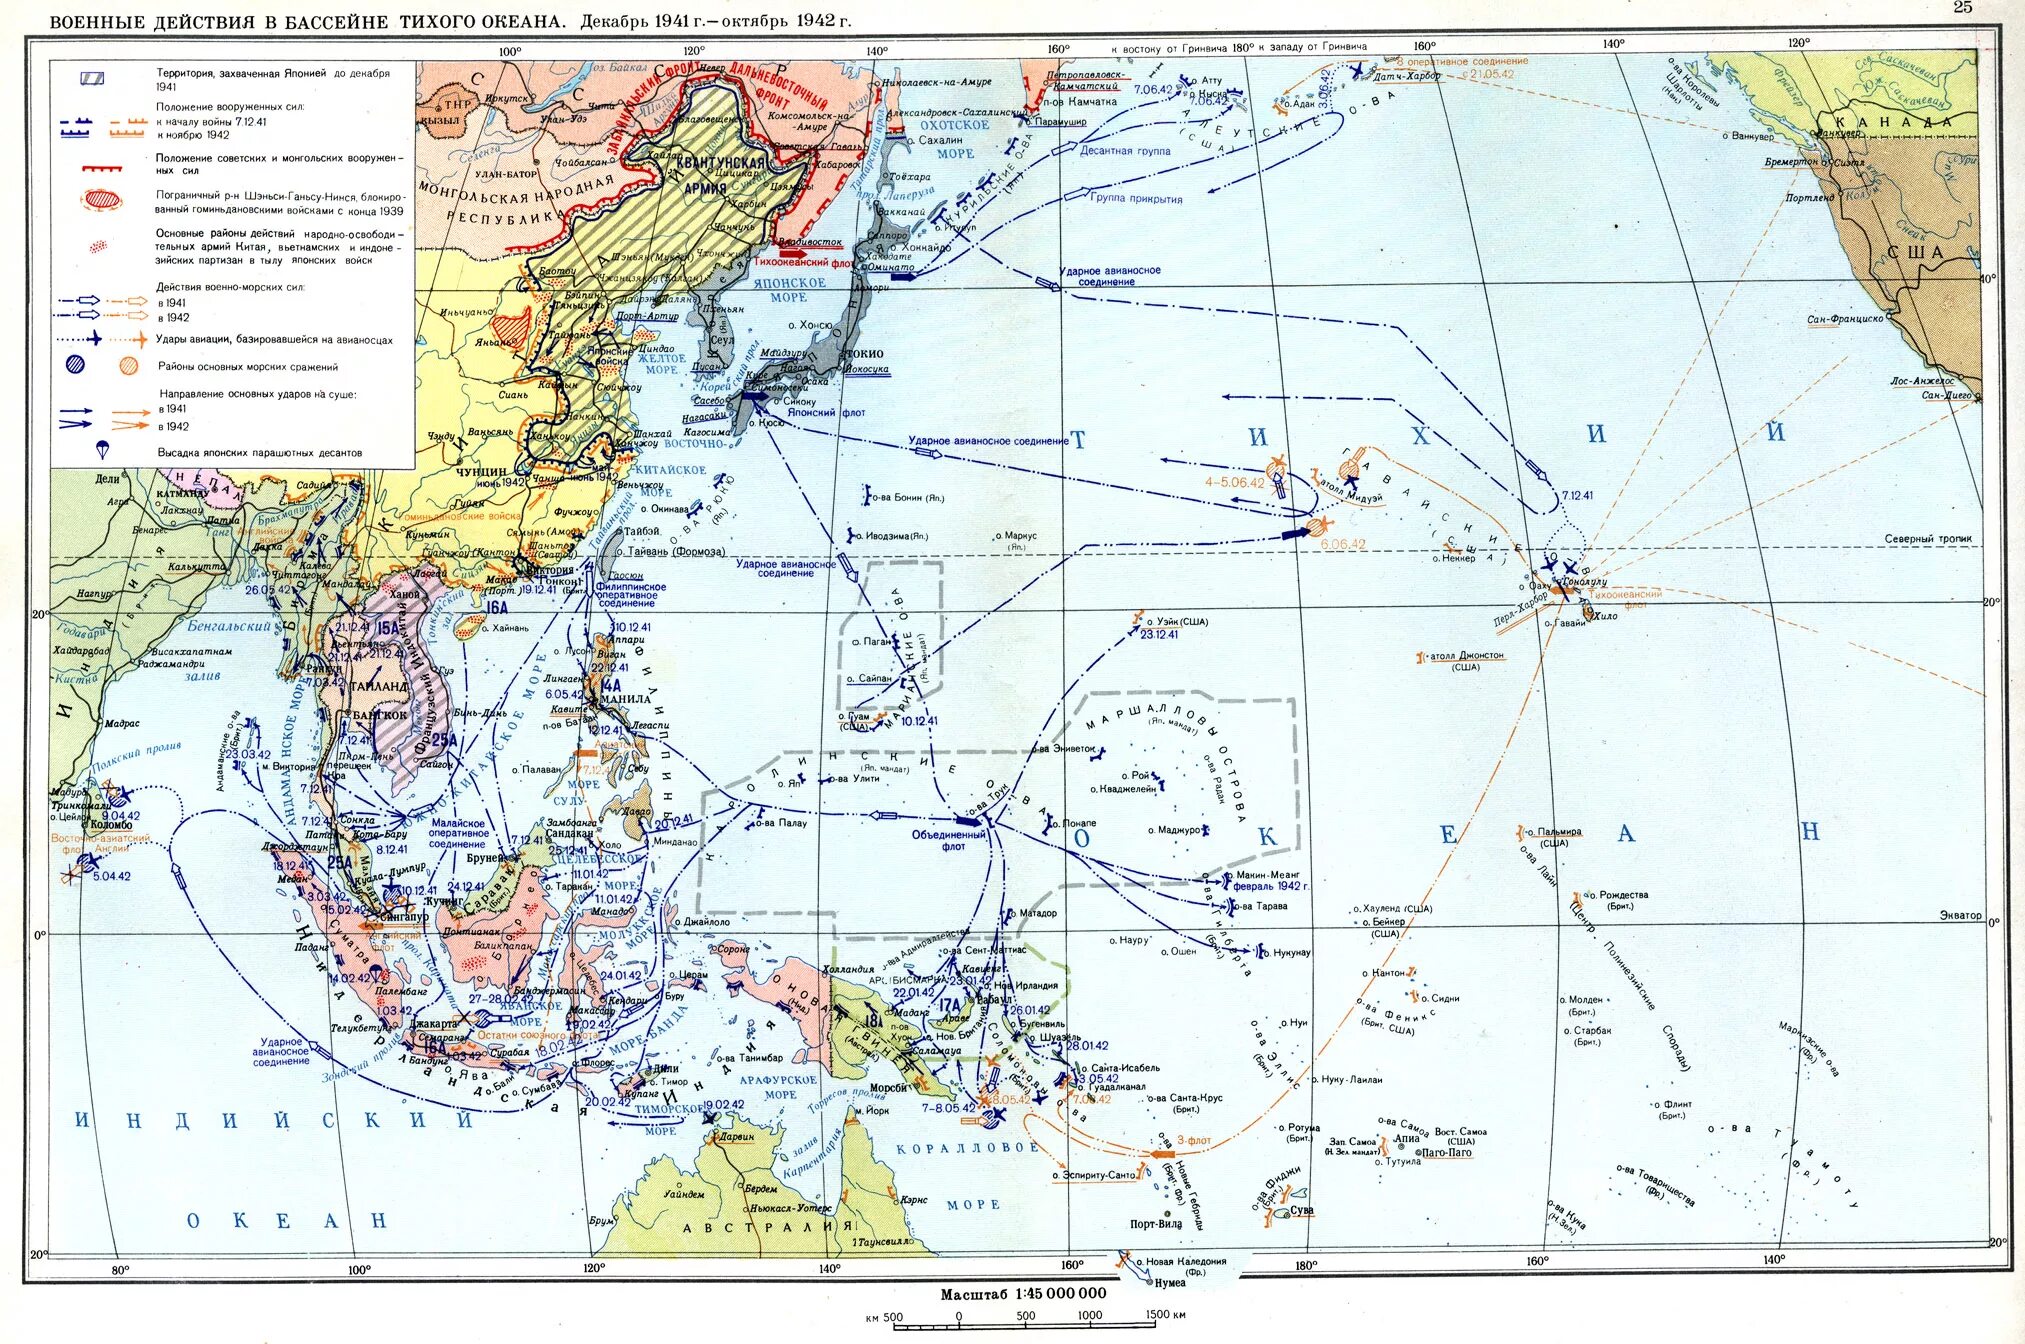 Тихий океан 1945. Карта боевых действий Японии во второй мировой. Тихоокеанский театр военных действий 1941-1945. Тихоокеанский театр военных действий второй мировой. Карта военных действий Японии во второй мировой войне.